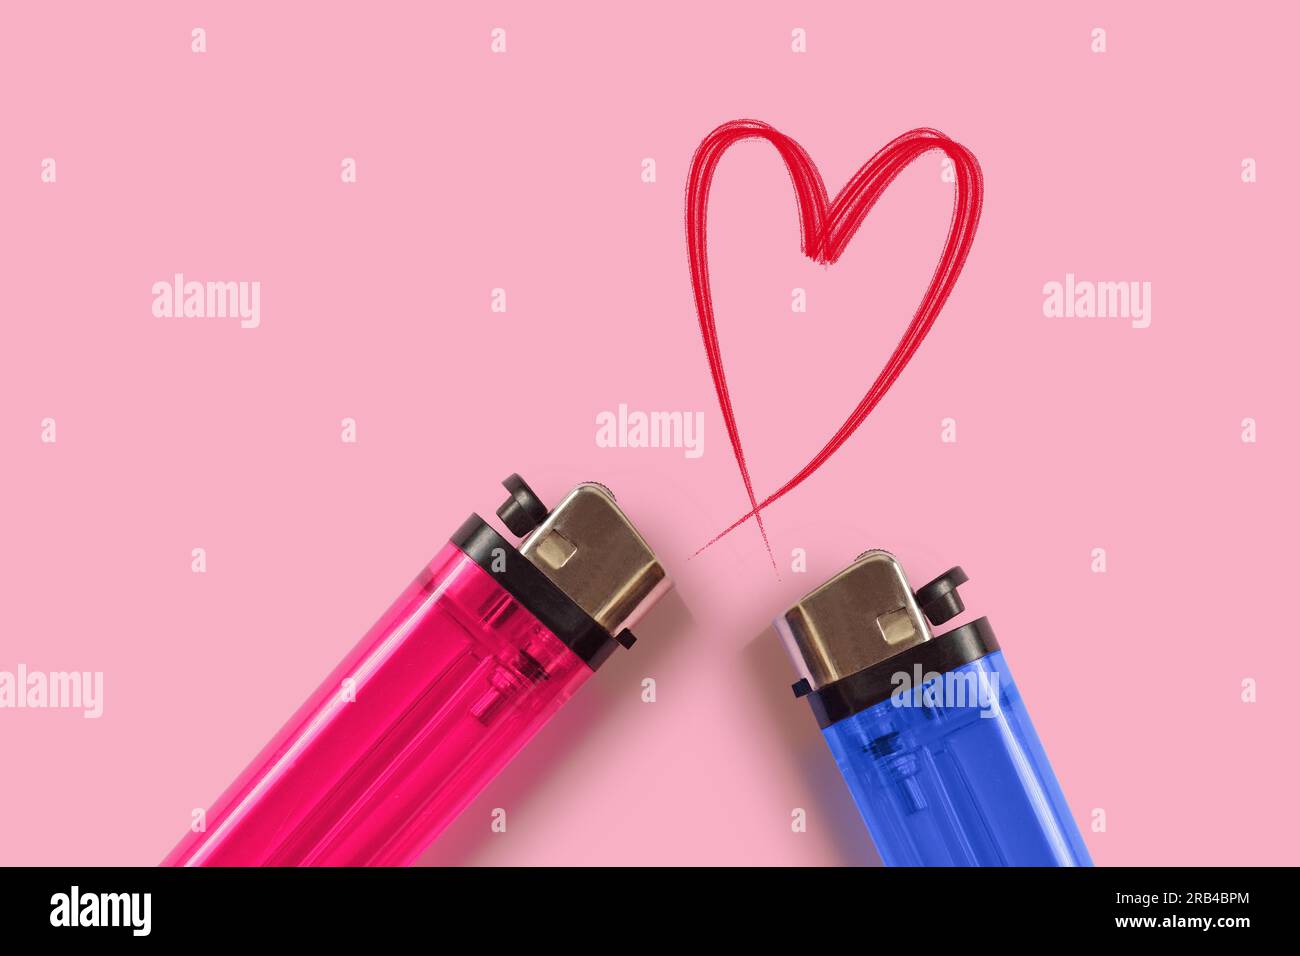 Accendini rosa e blu con cuore su sfondo rosa - concetto di amore Foto Stock